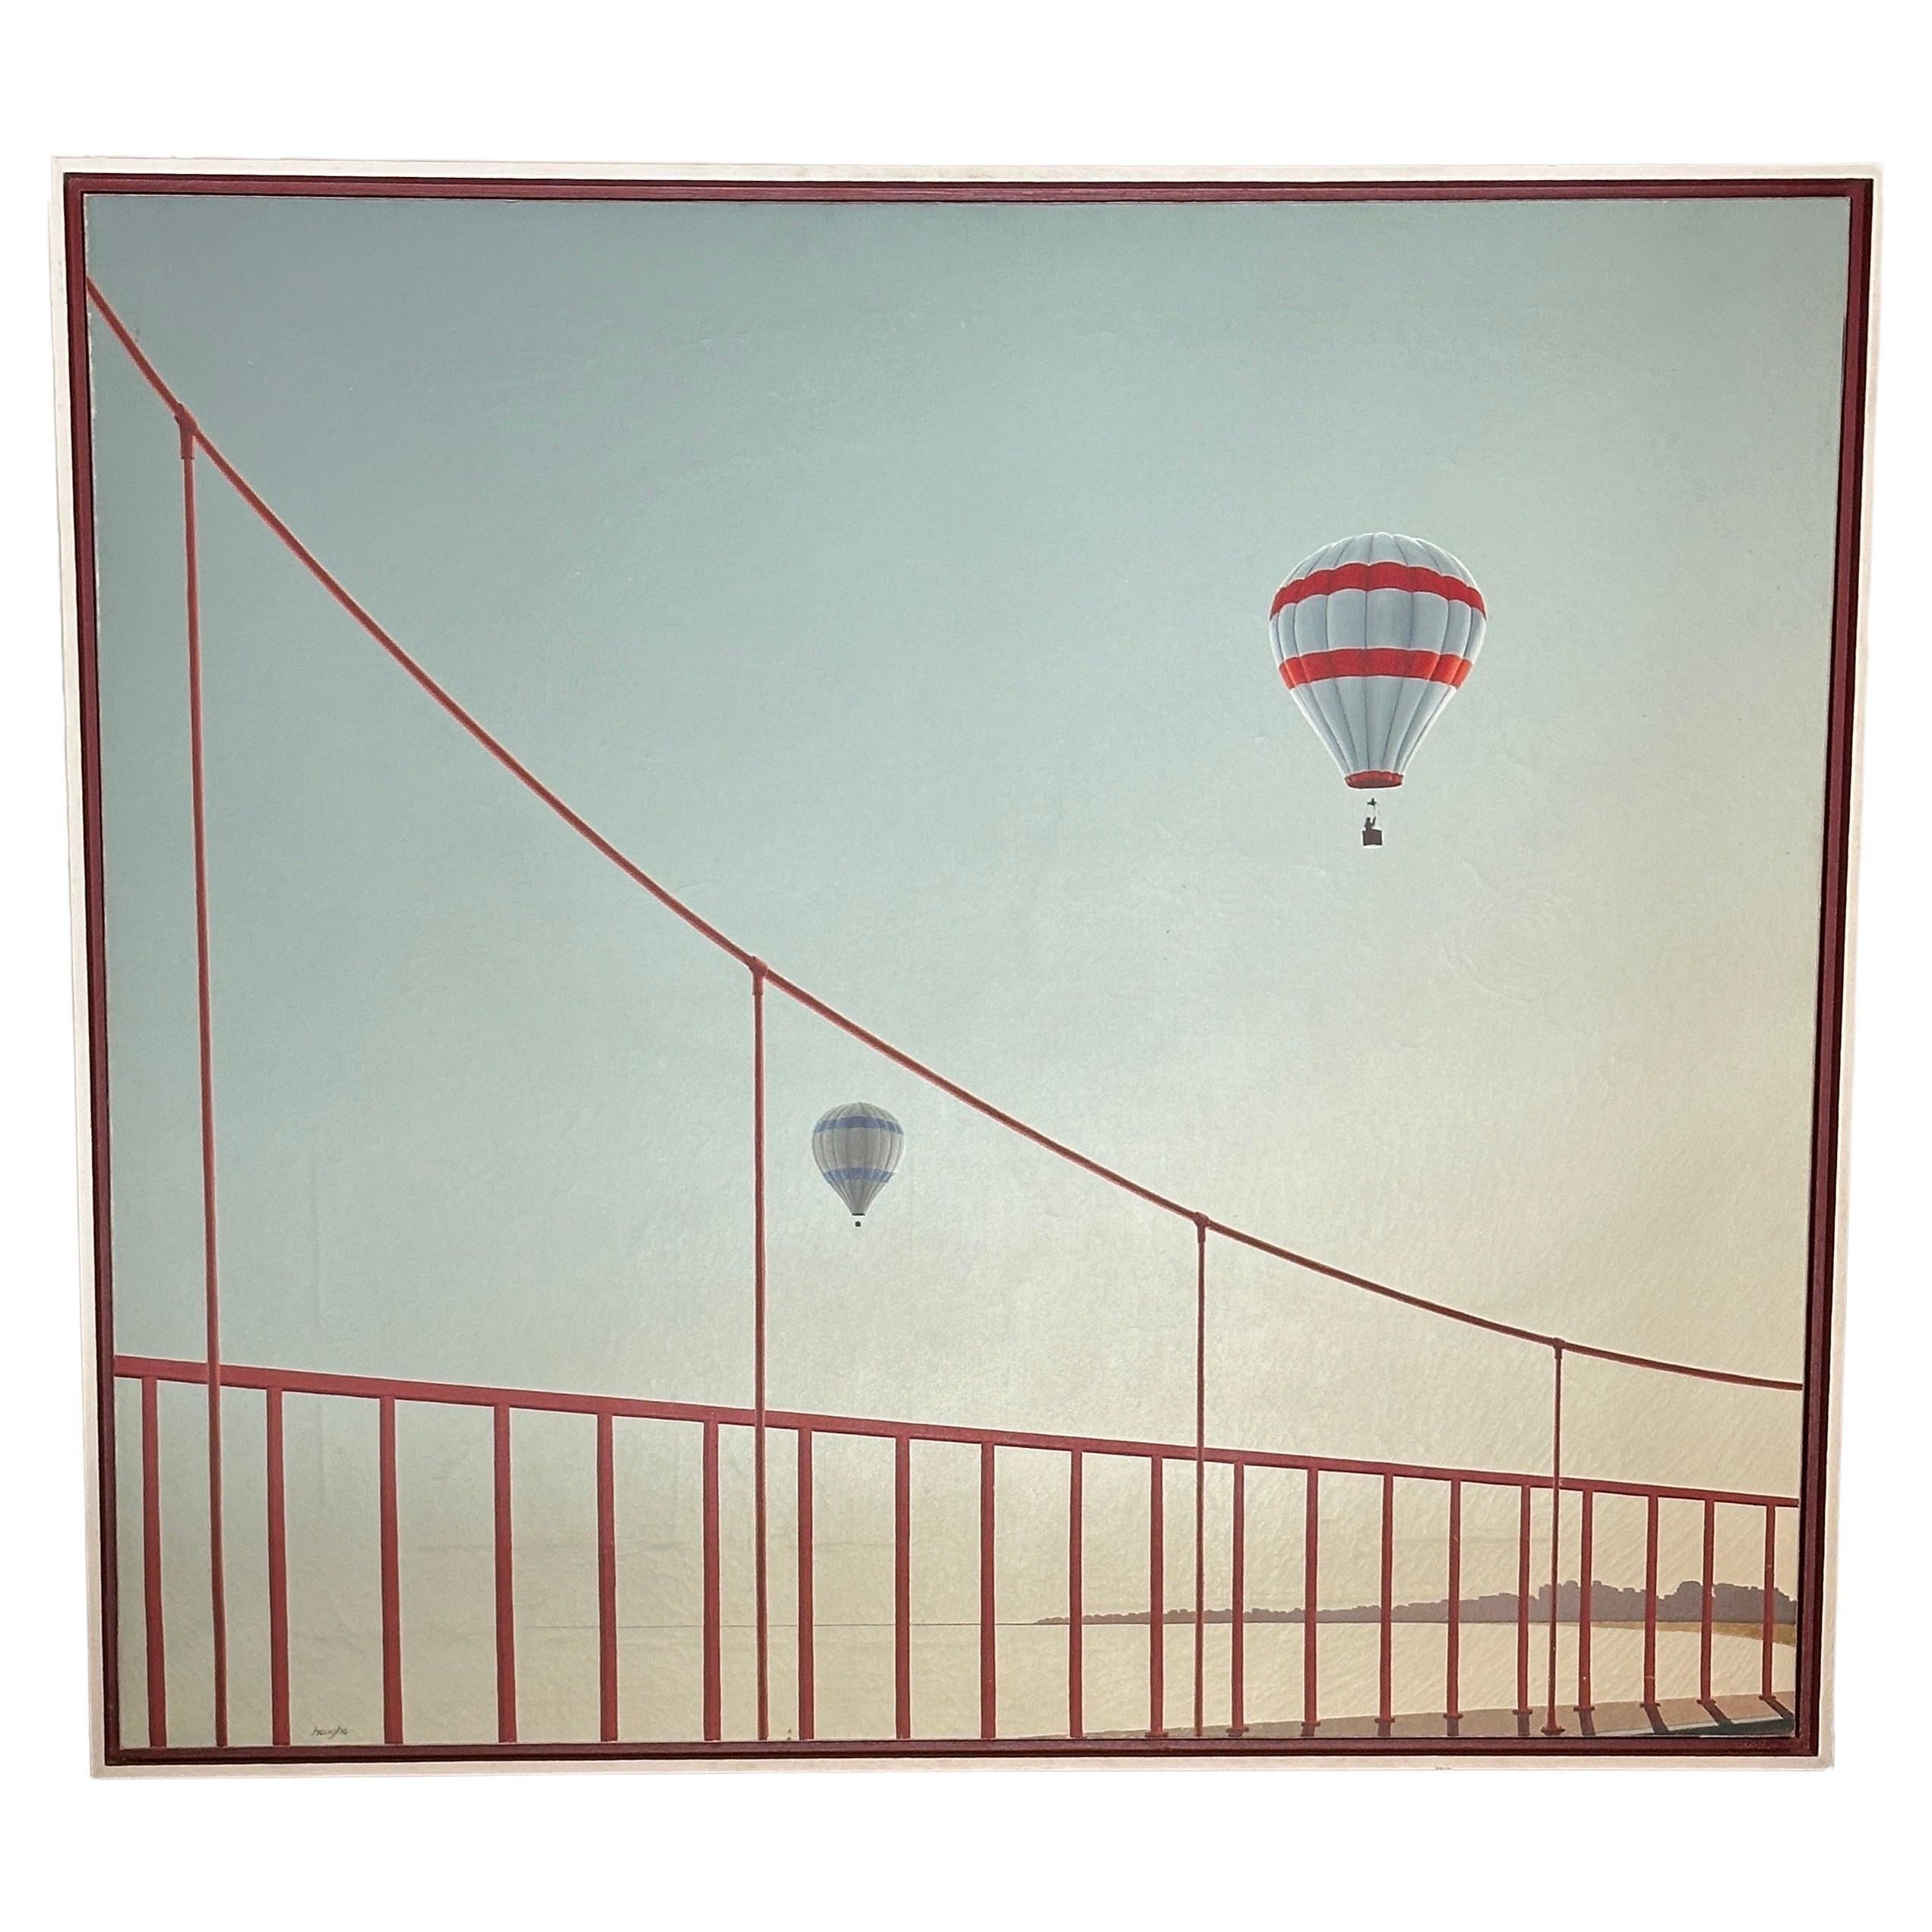 Cette peinture de Patrick Heughe représente une vue de deux montgolfières flottant au-dessus du pont emblématique de San Francisco. Avec une attention méticuleuse aux détails, Heughe capture l'essence d'un moment suspendu dans le temps, là où le